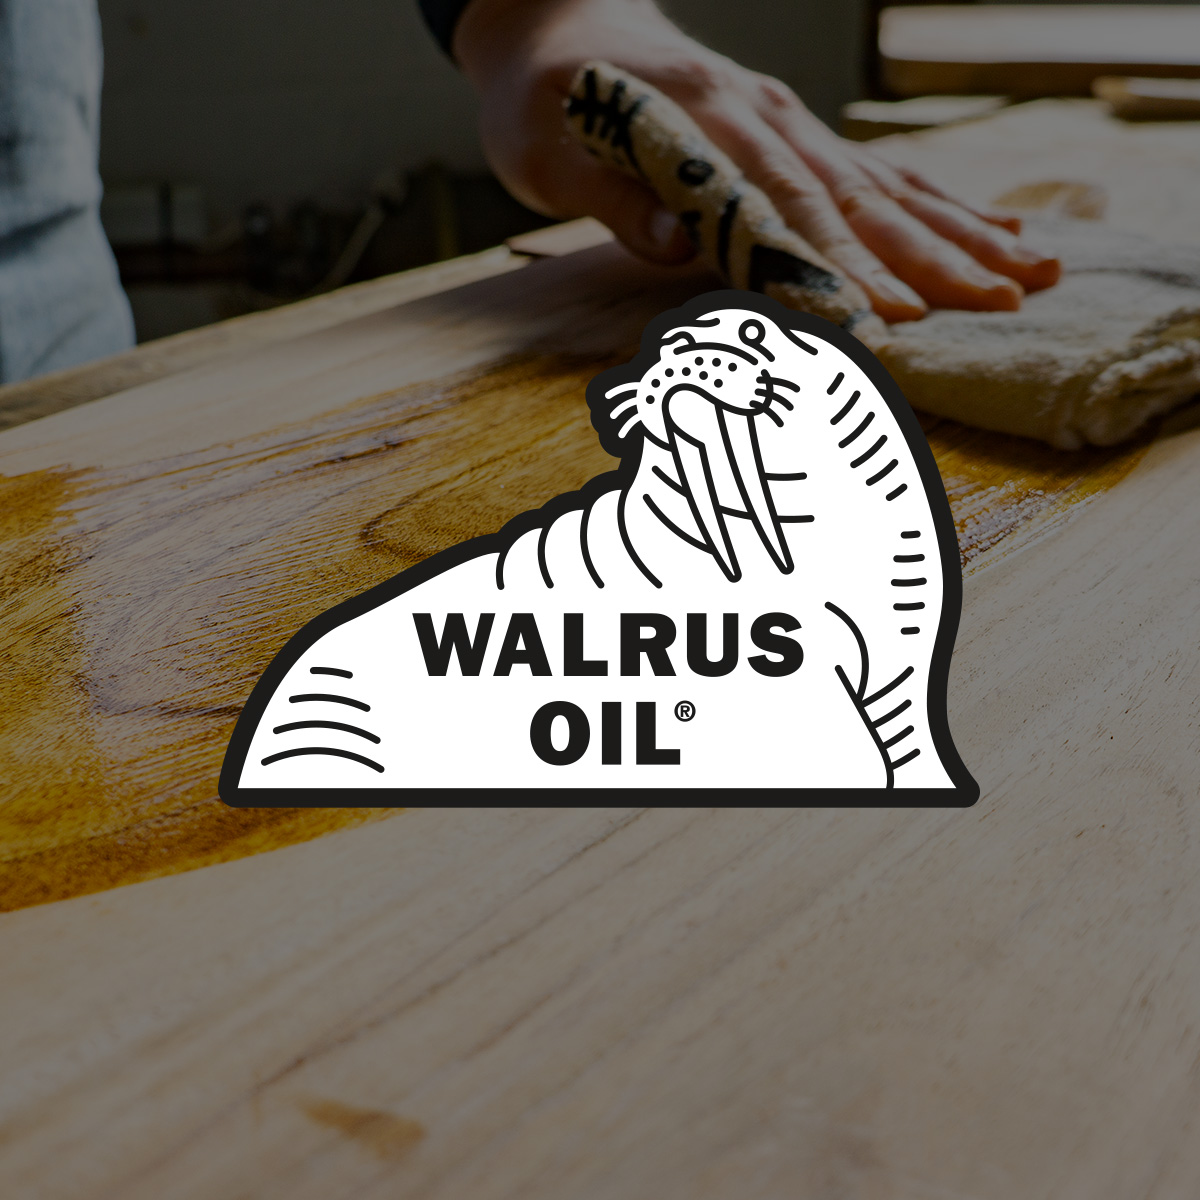 Walrus Oil